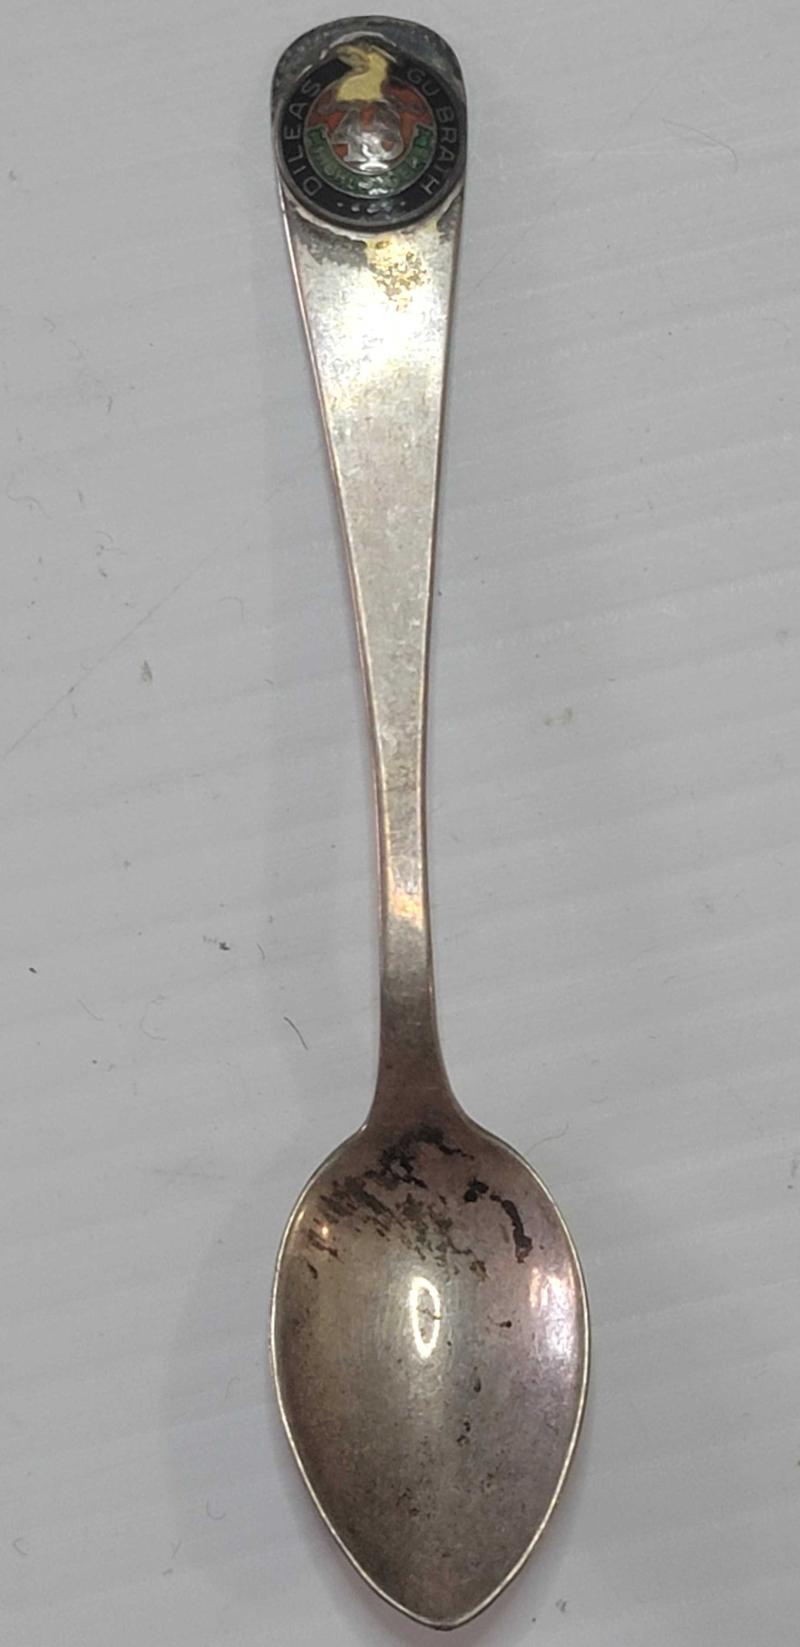 48th Highlander Commemorative Spoon